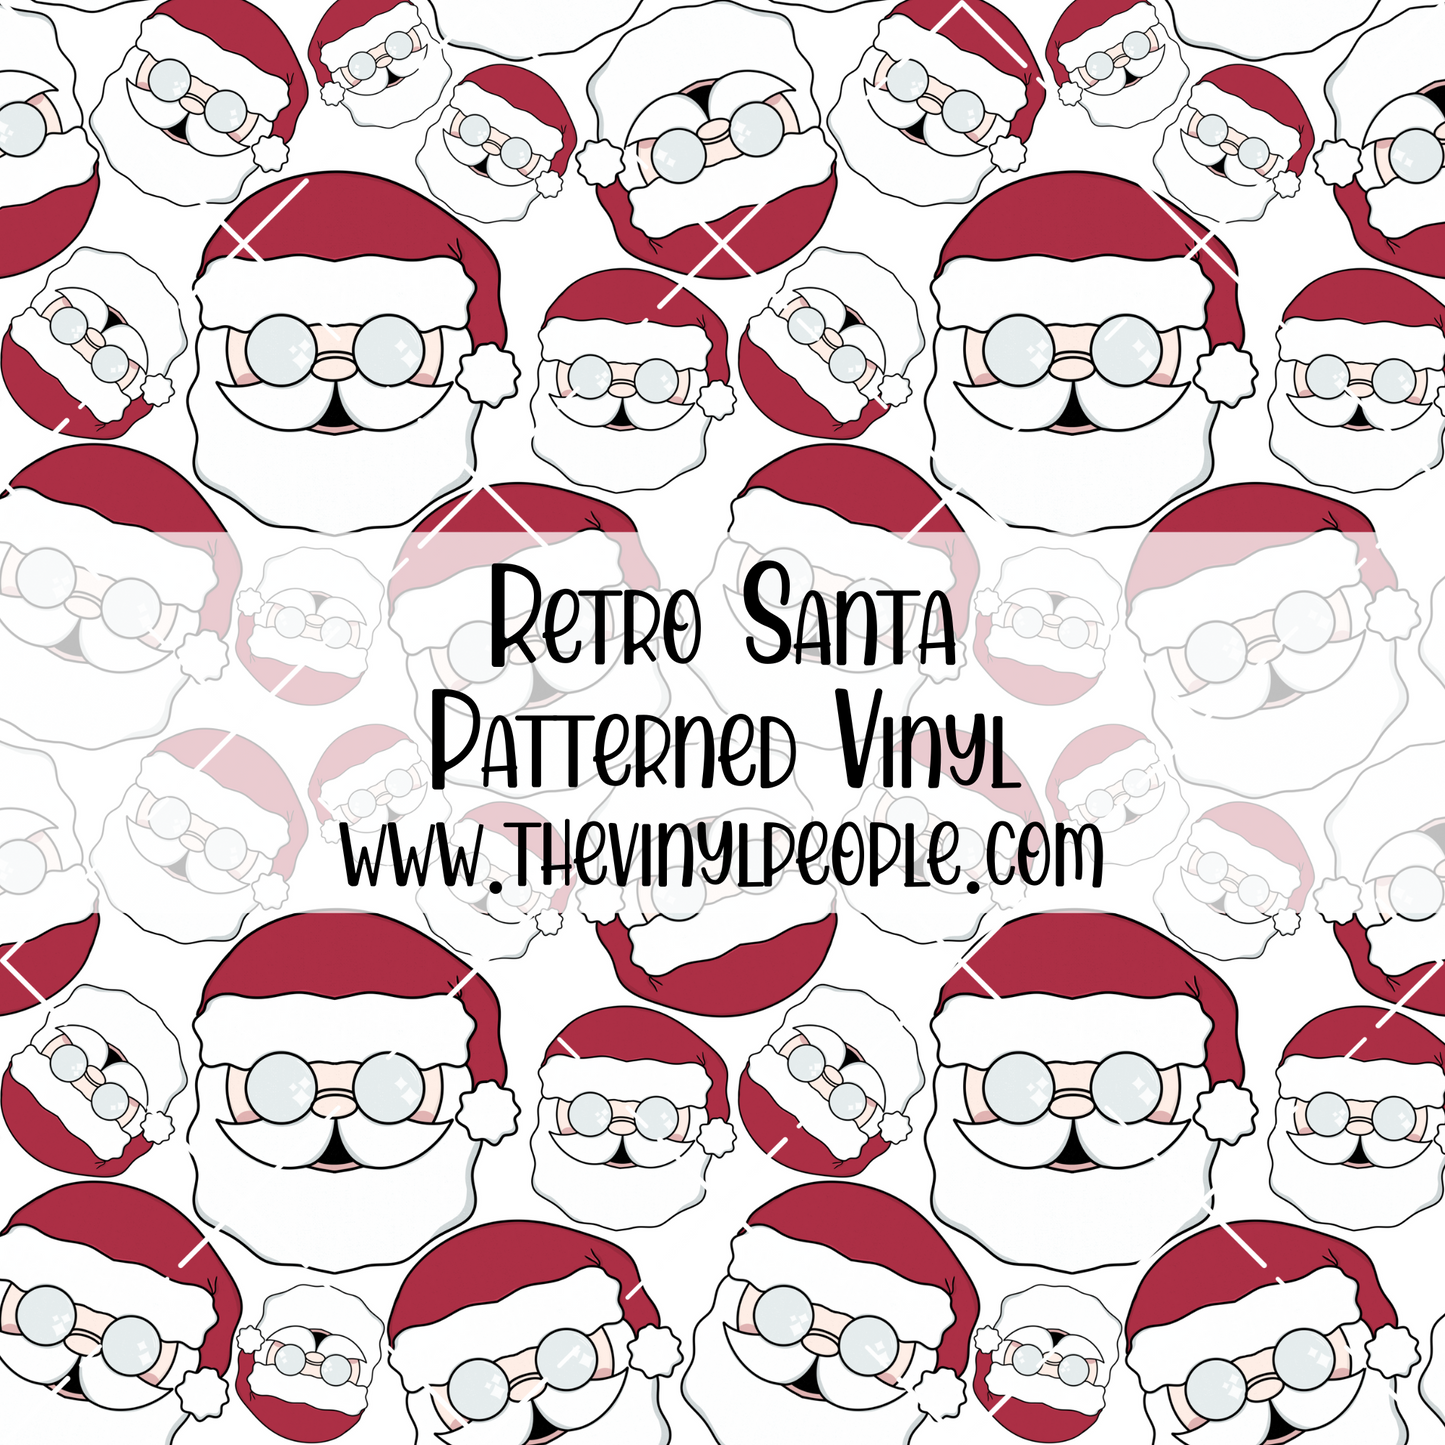 Retro Santa Patterned Vinyl